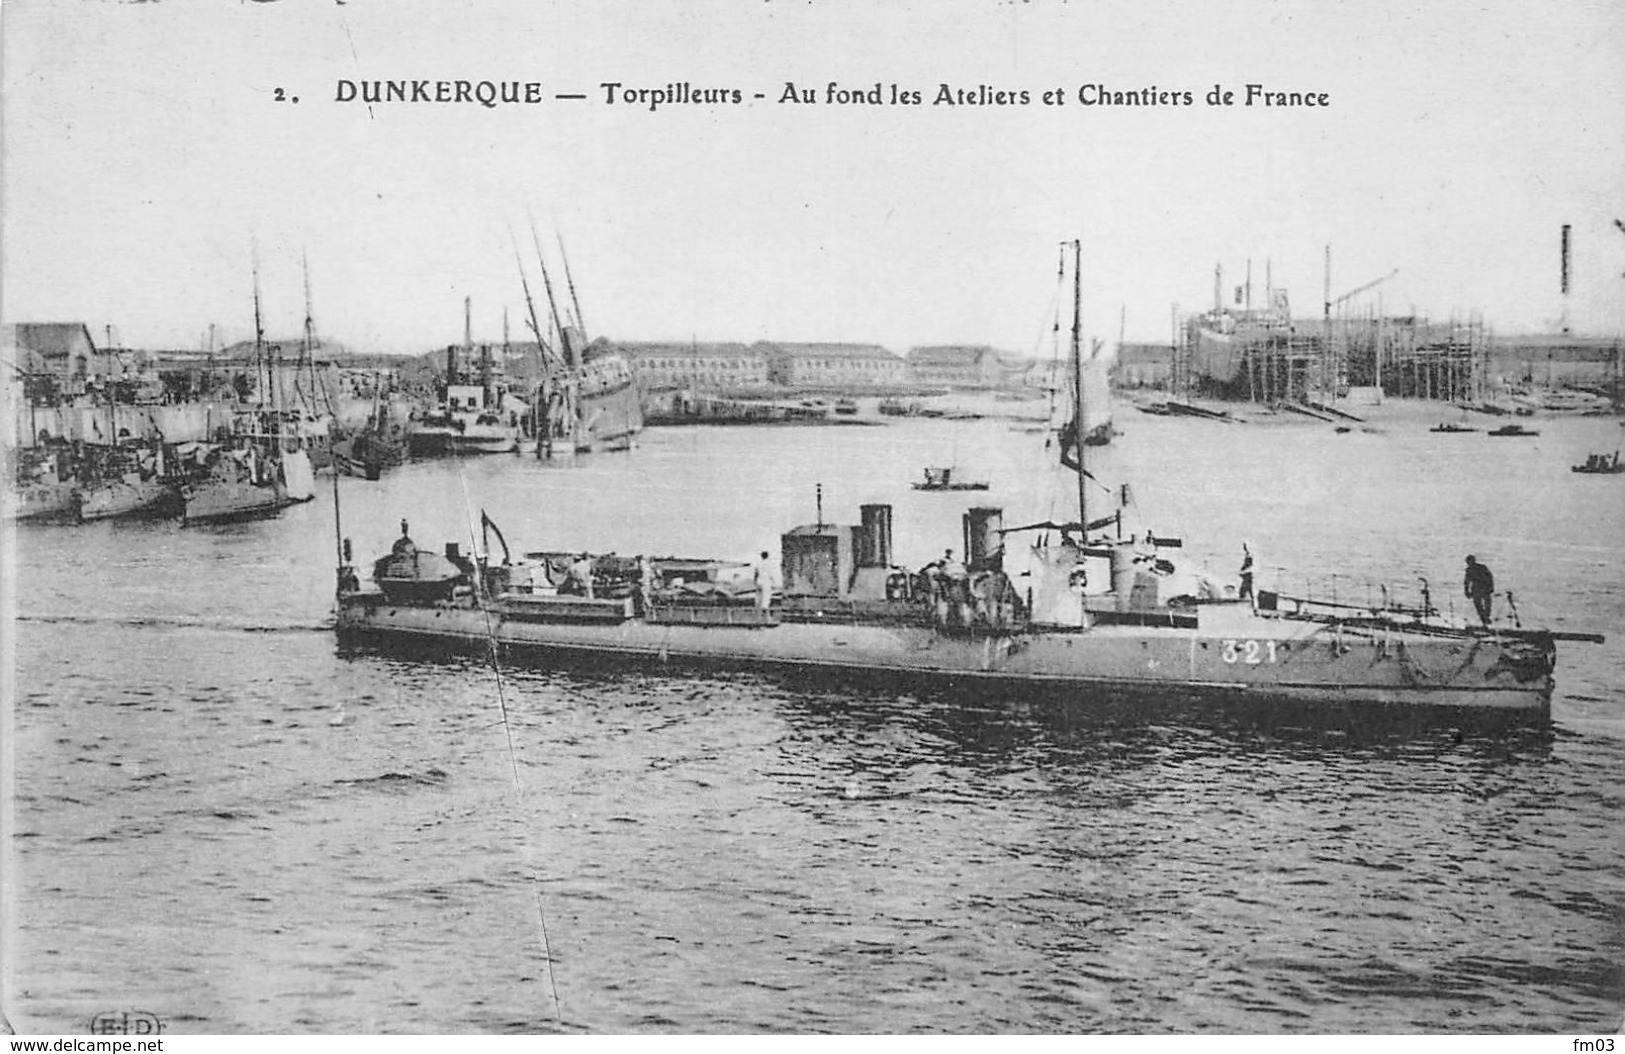 Dunkerque ELD 2 Torpilleurs - Dunkerque